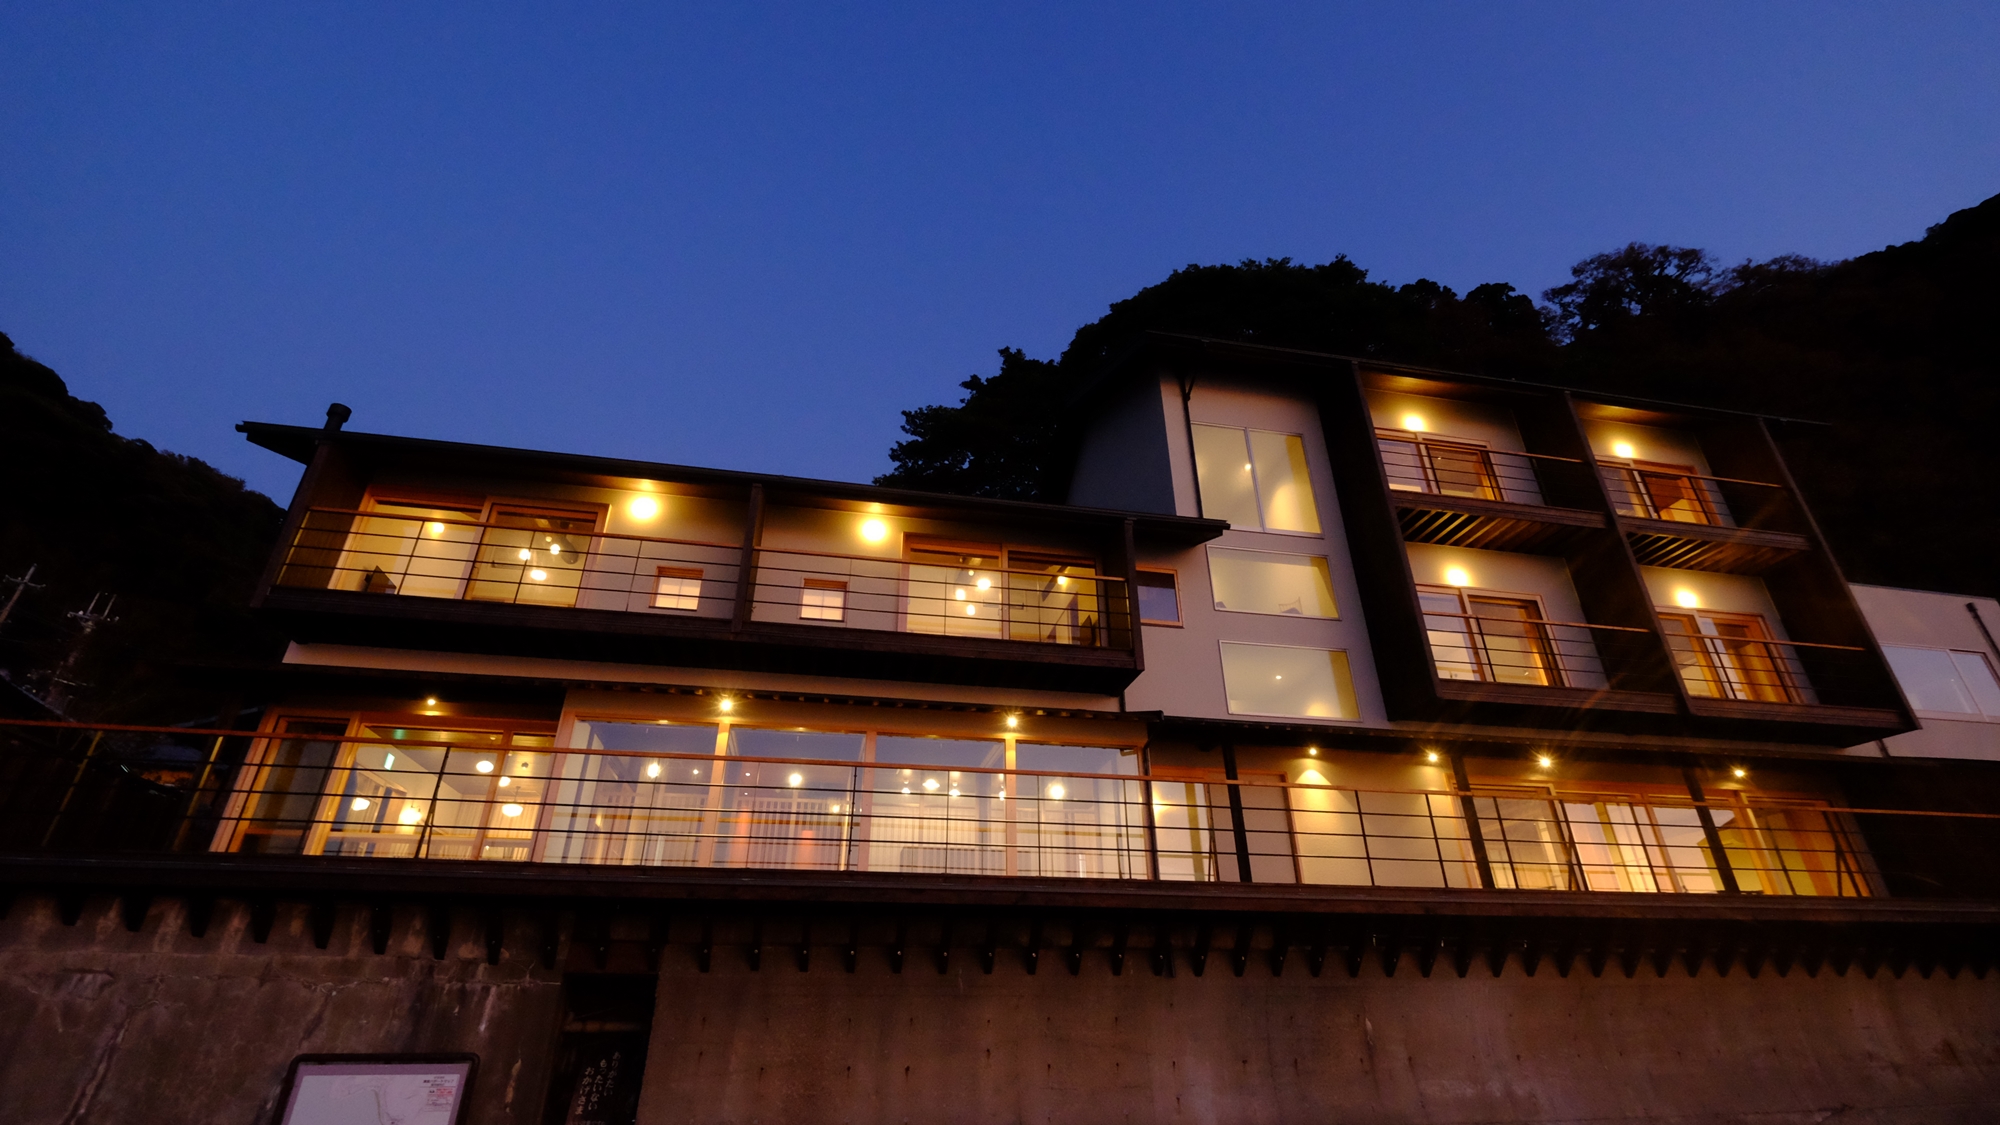 福井で三方五湖の絶景巡りに便利なホテルや旅館